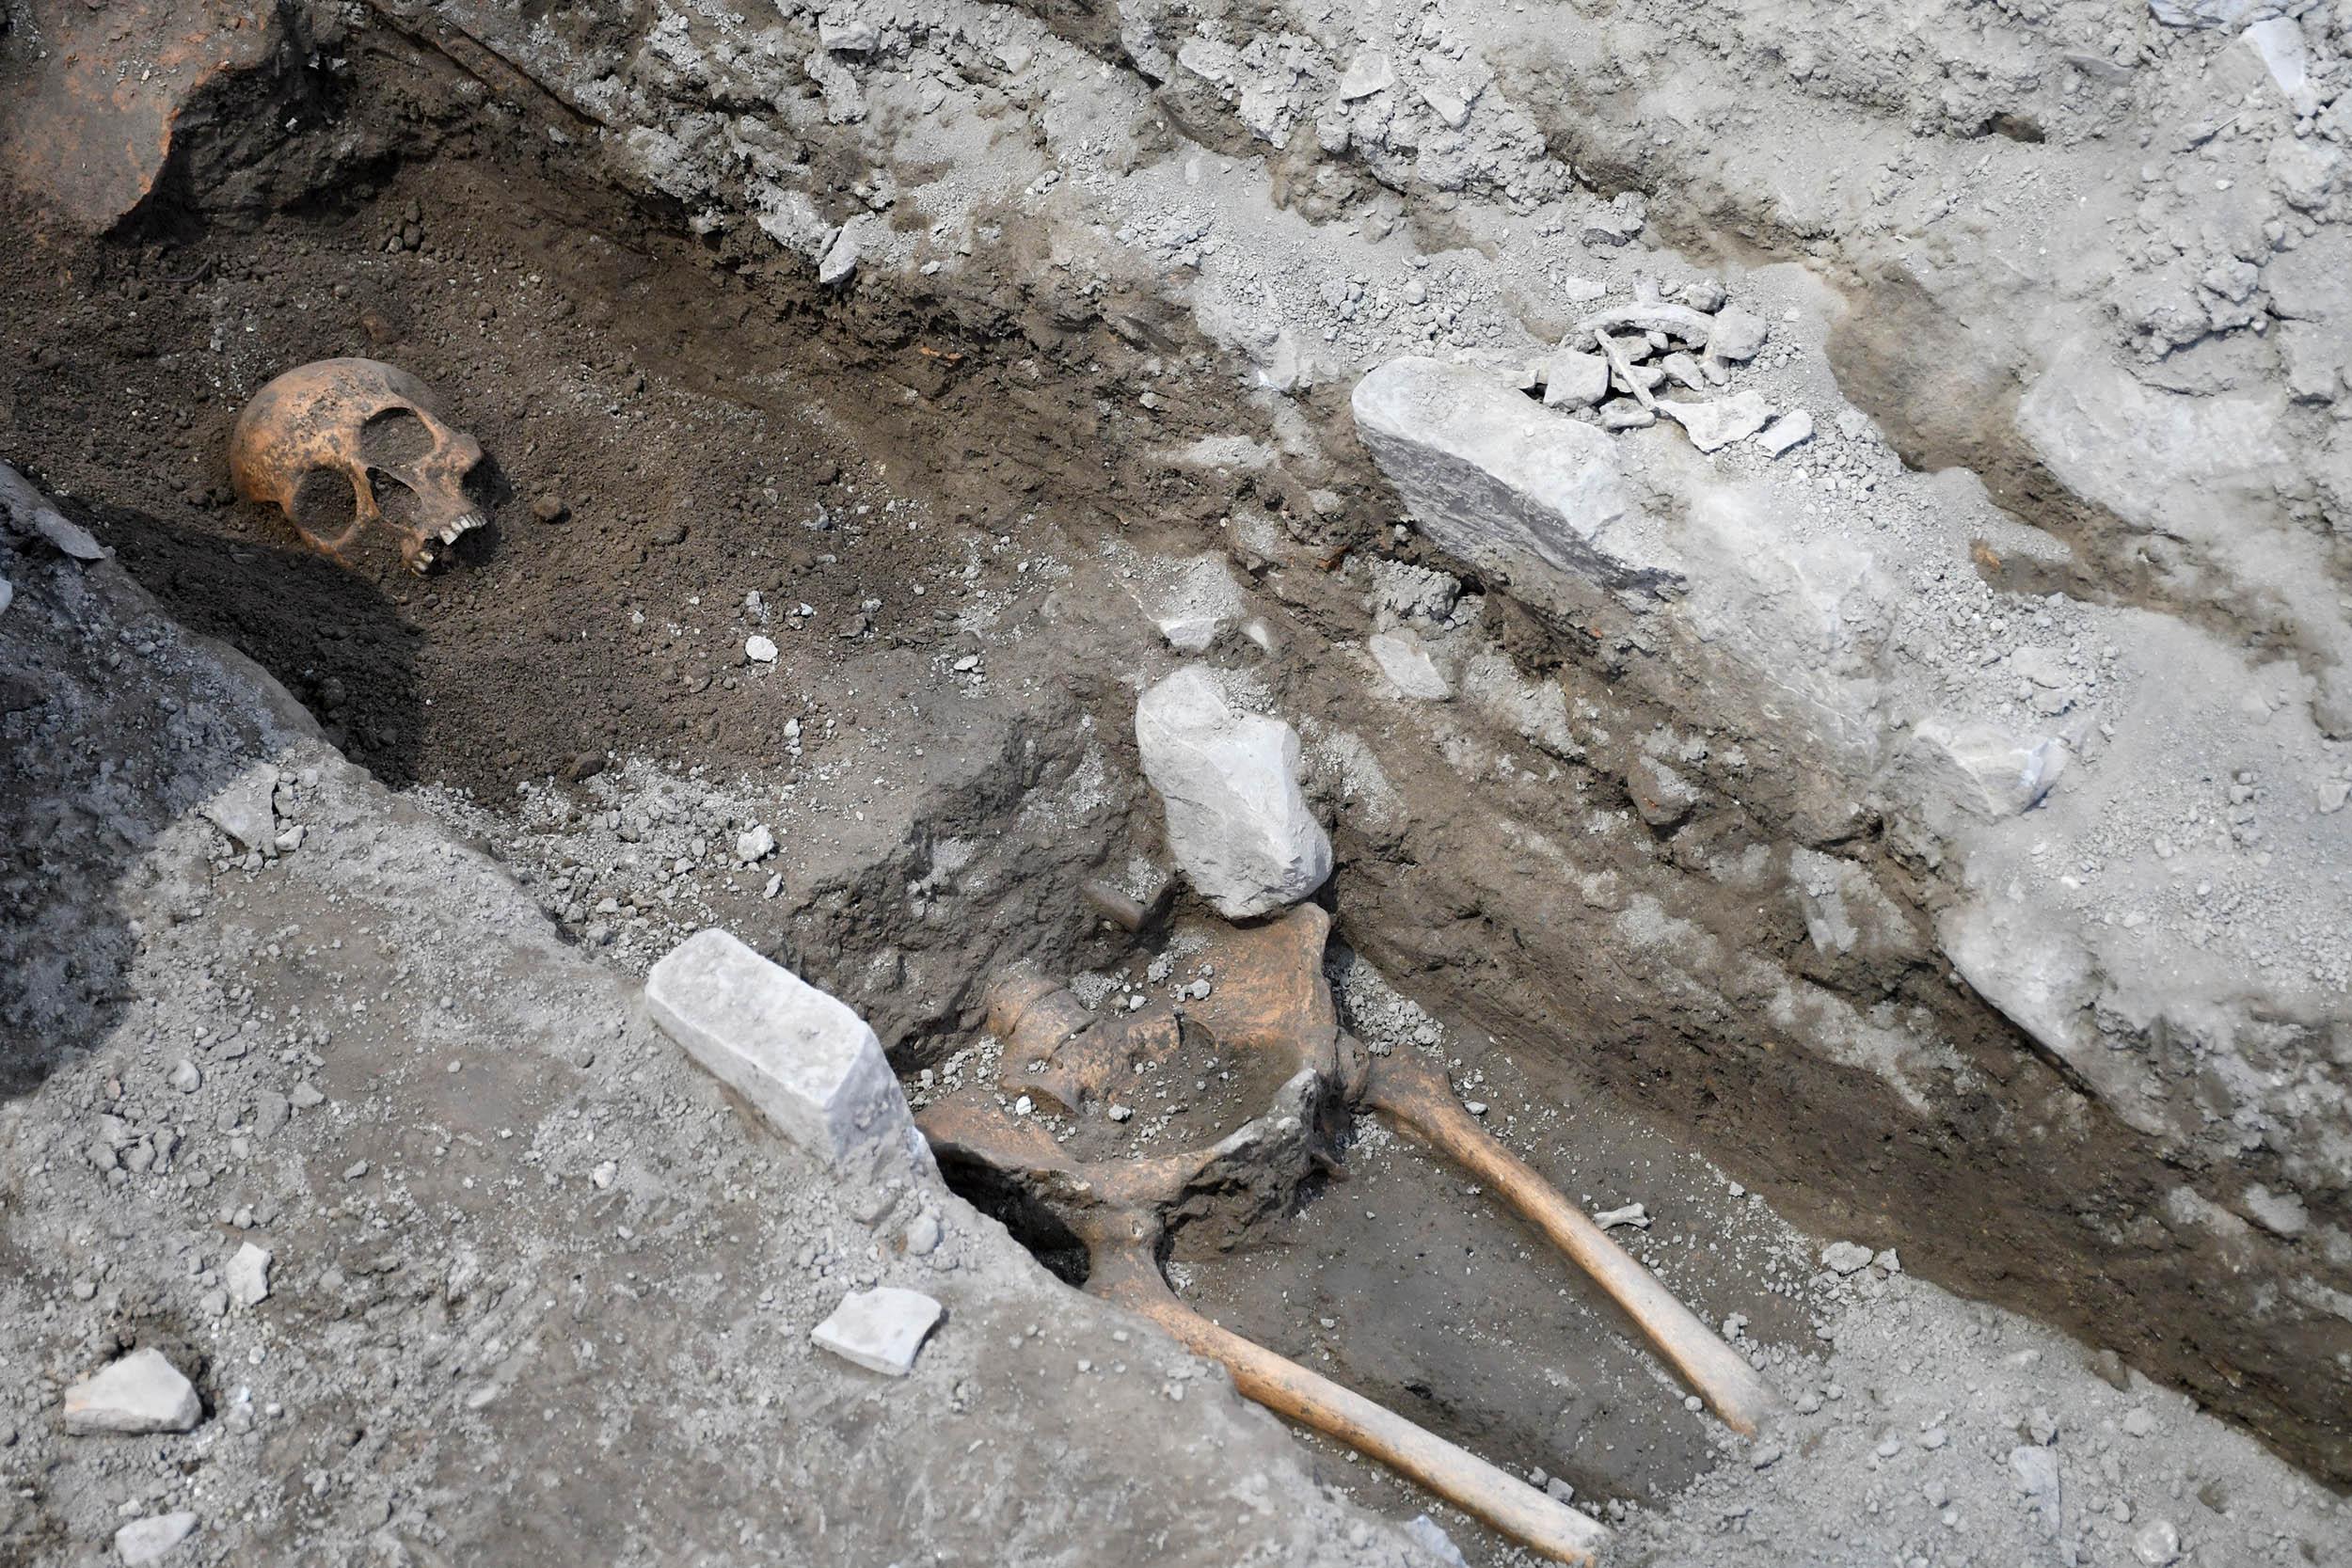 Tarihi Kadıkalesi kazılarında 13üncü yüzyıldan kalma insan iskeletleri bulundu